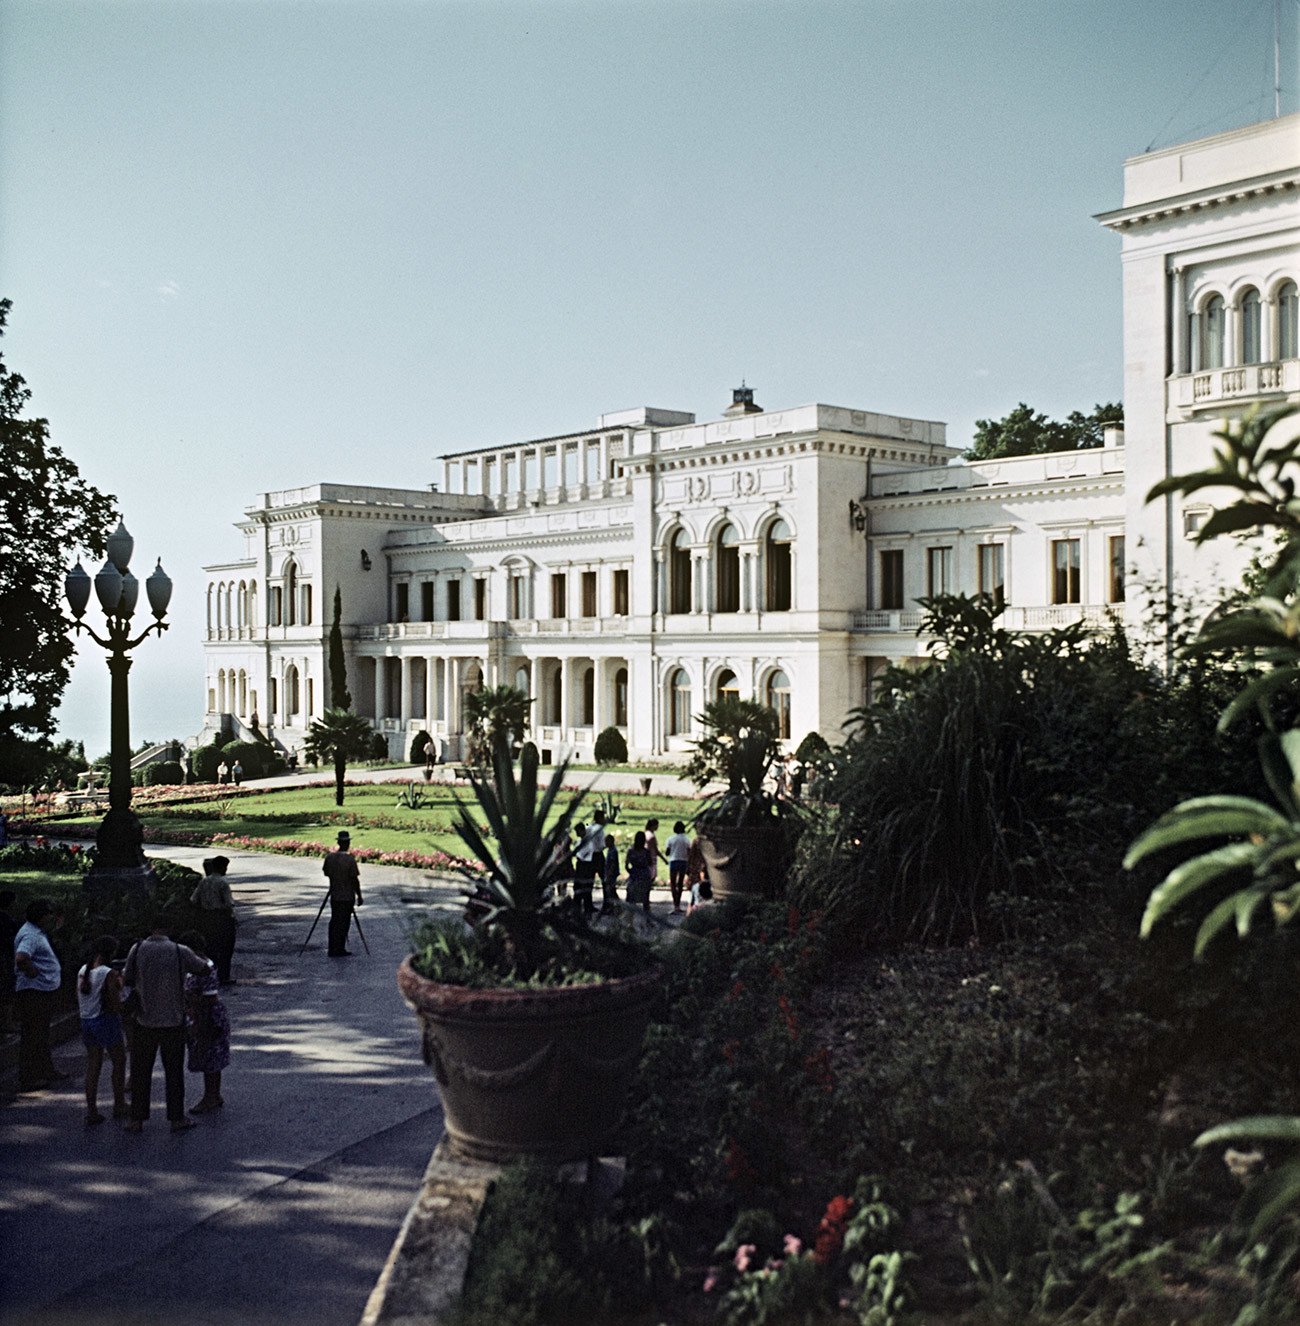 Sejak akhir Perang Dunia II hingga kematian Stalin pada 1953, istana tersebut digunakan sebagai dacha bagi para pejabat negara.